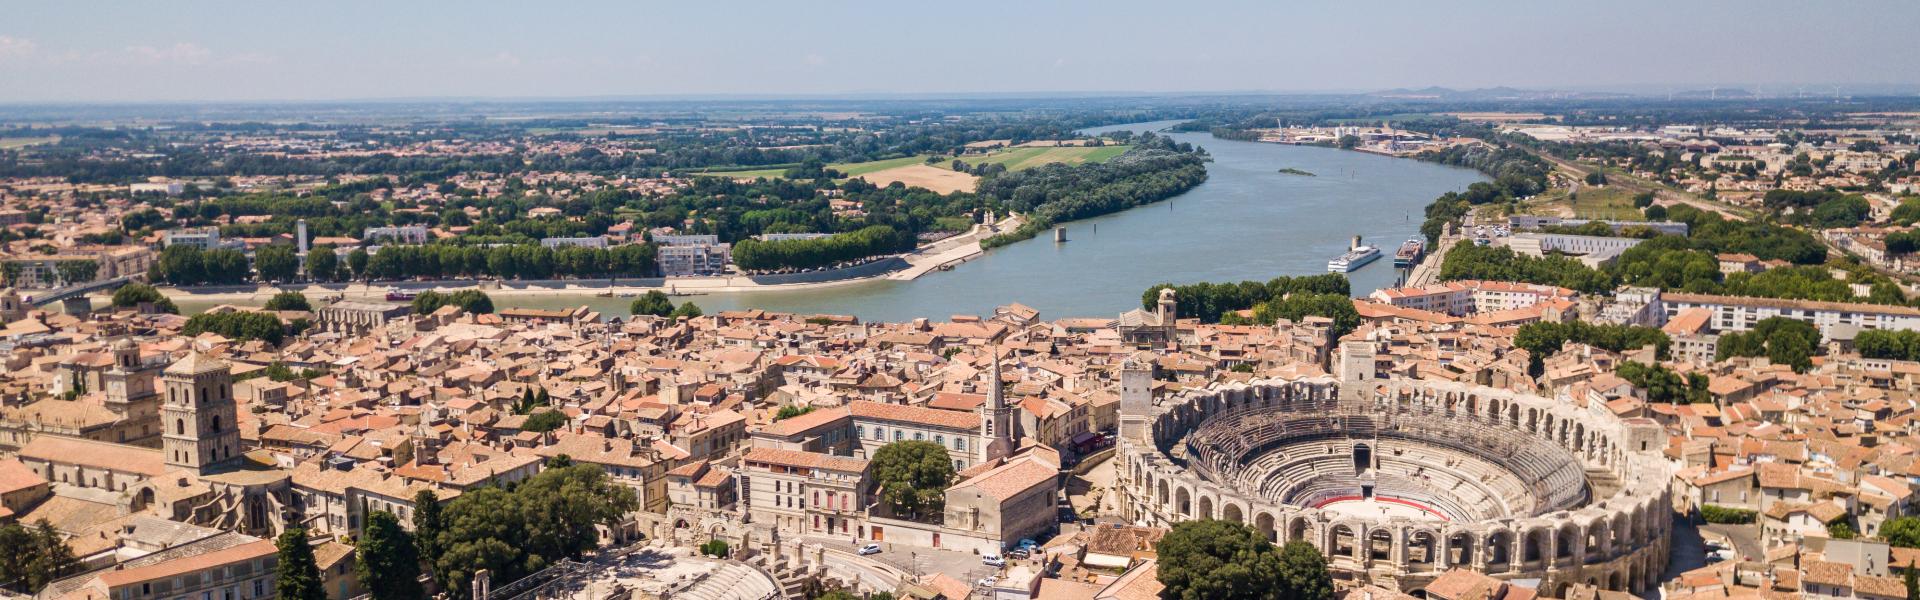 Ferienwohnungen & Ferienhäuser für Urlaub in Arles - Casamundo